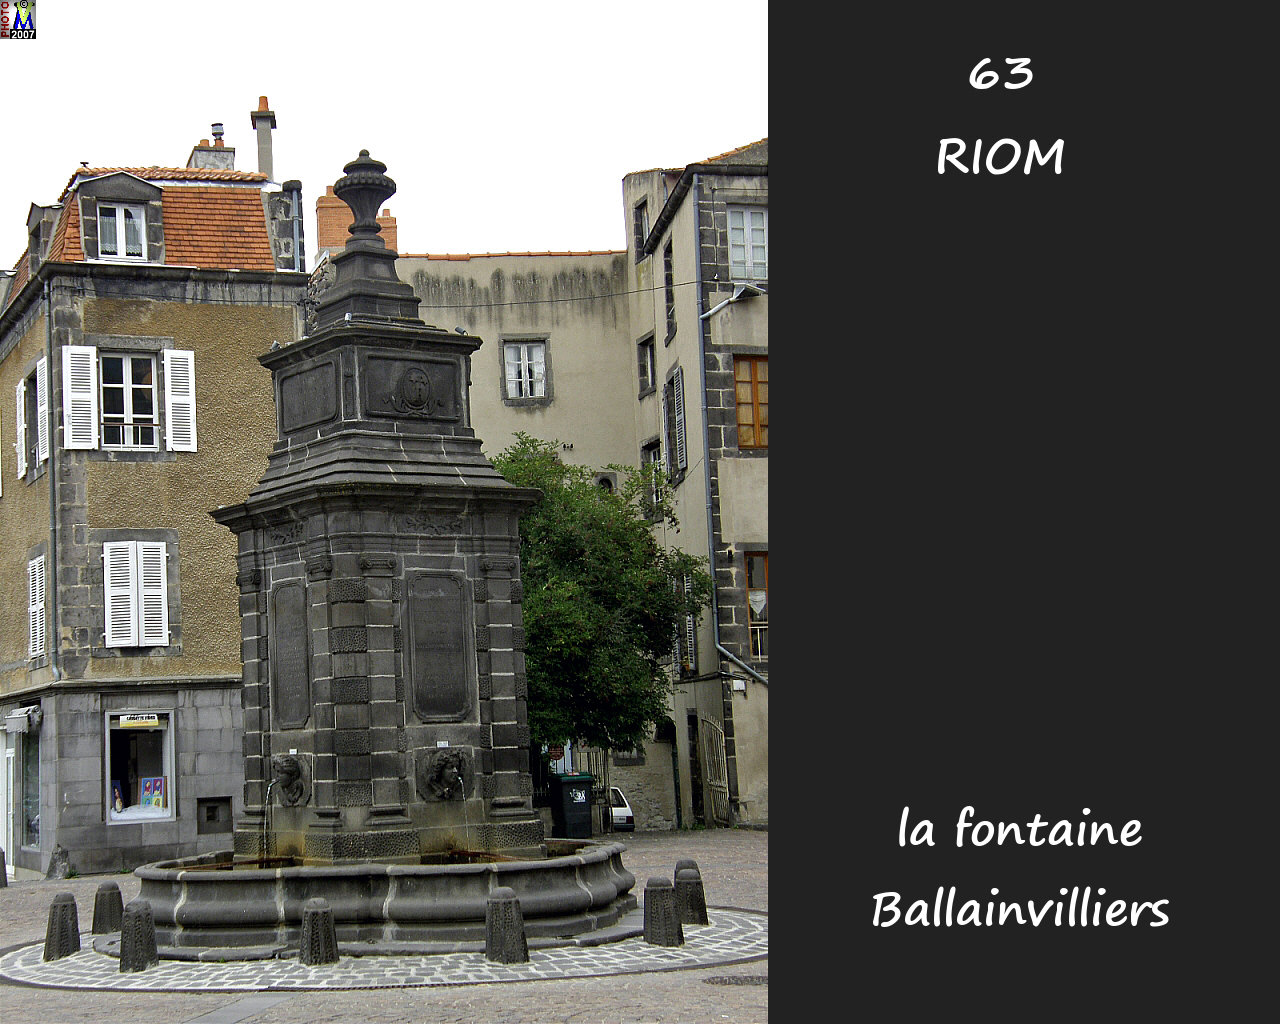 63RIOM_fontaine_ballainvilliers_100.jpg